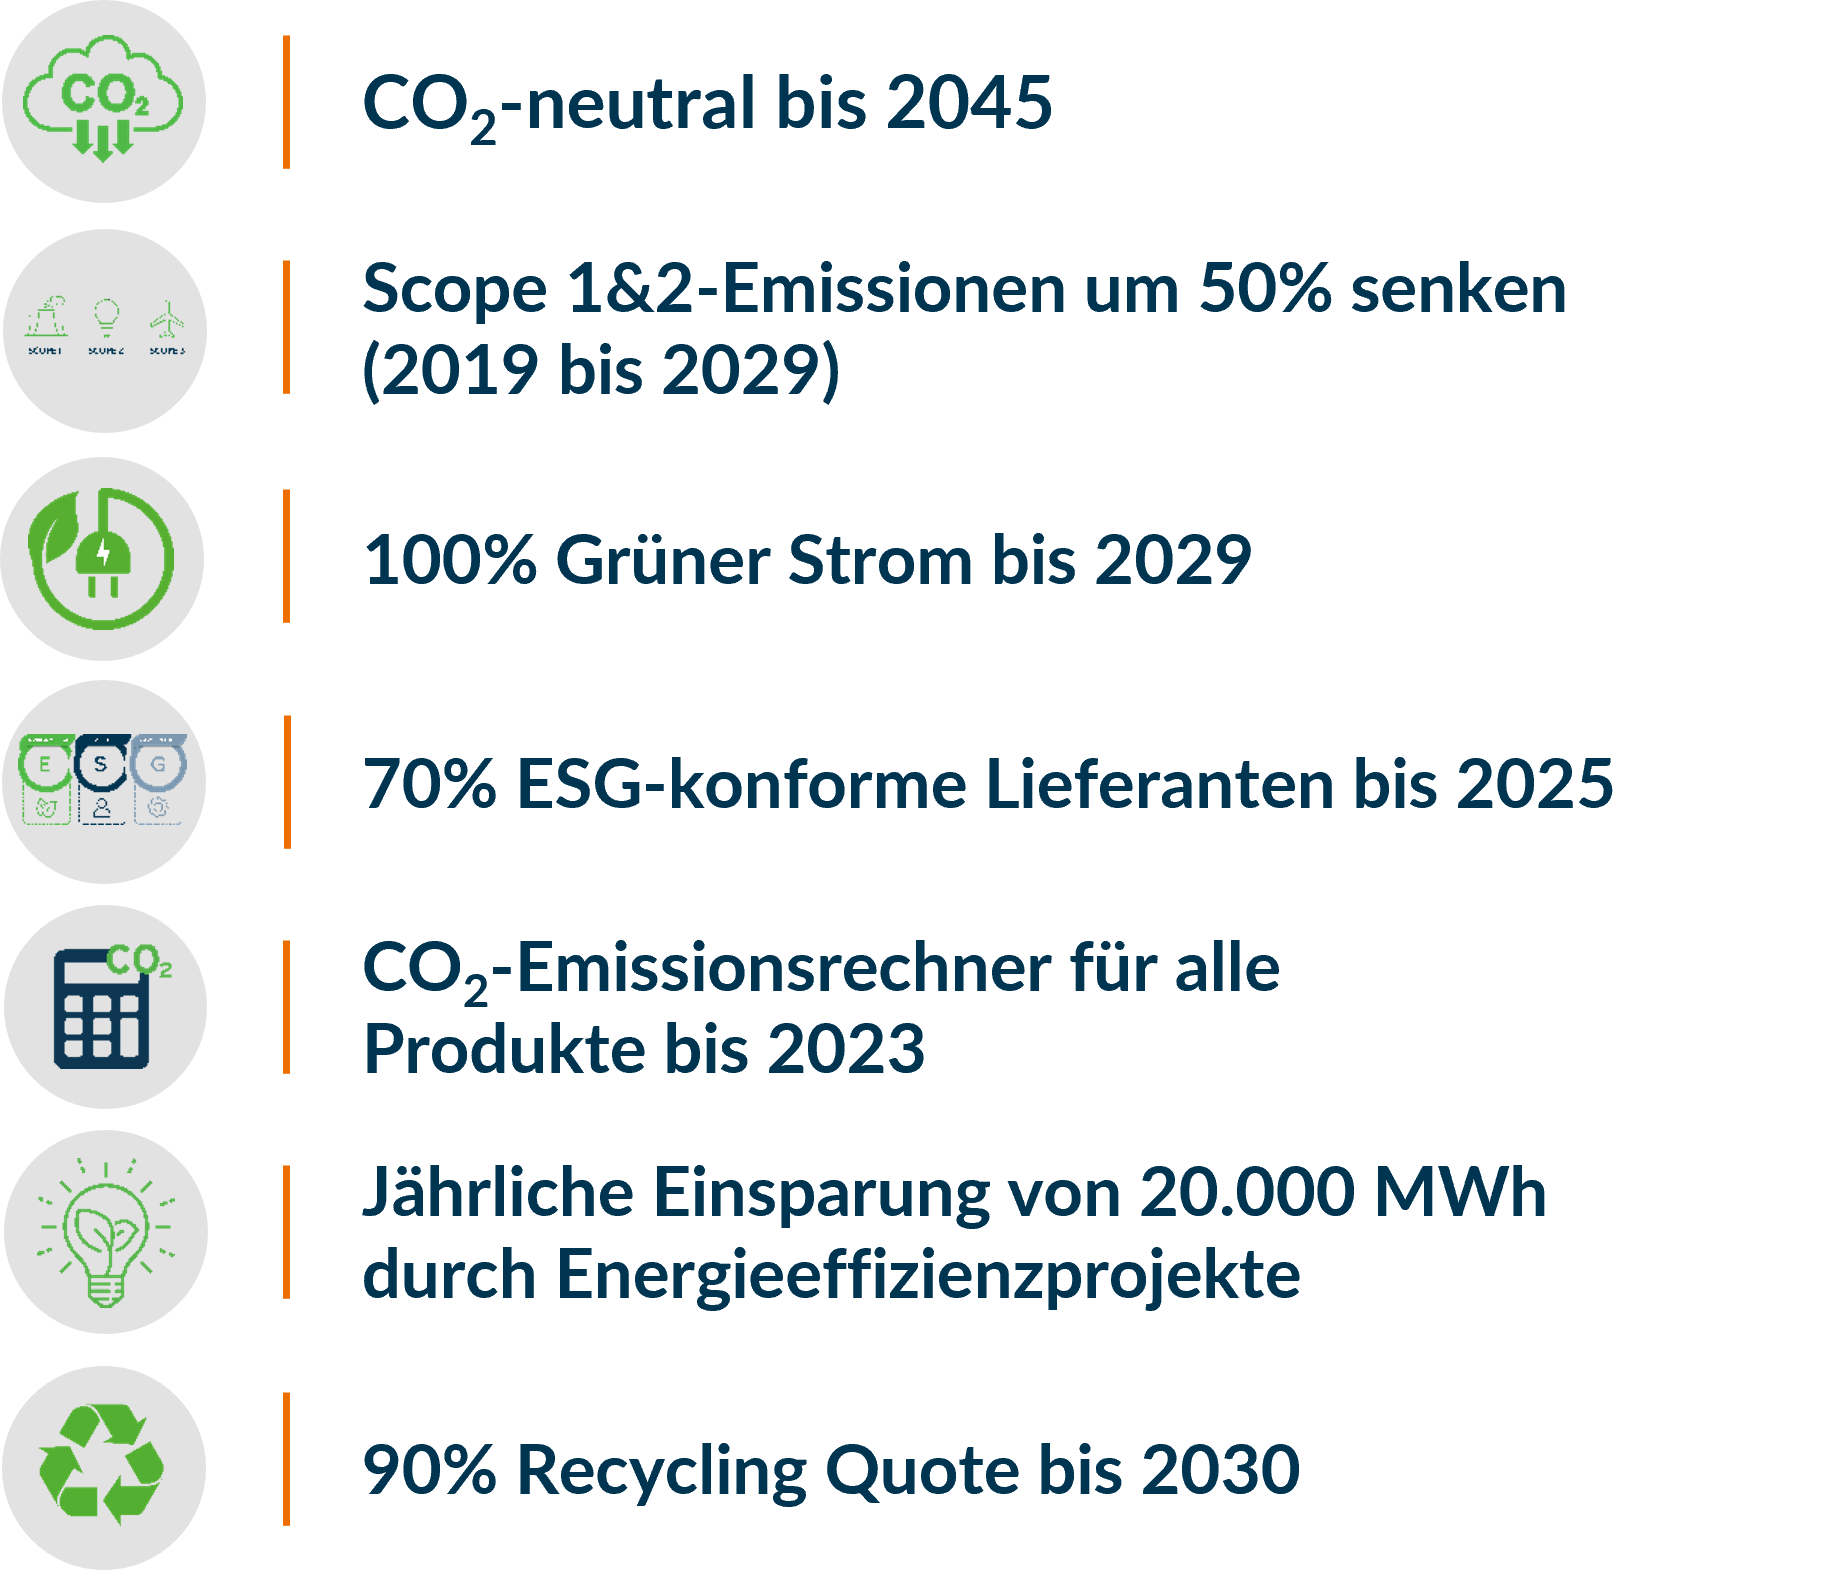 Tabelle mit einer Auflistung von Nachhaltigkeitszielen und den Jahren, in denen sie erreicht werden sollen, zusammen mit den entsprechenden Piktogrammen